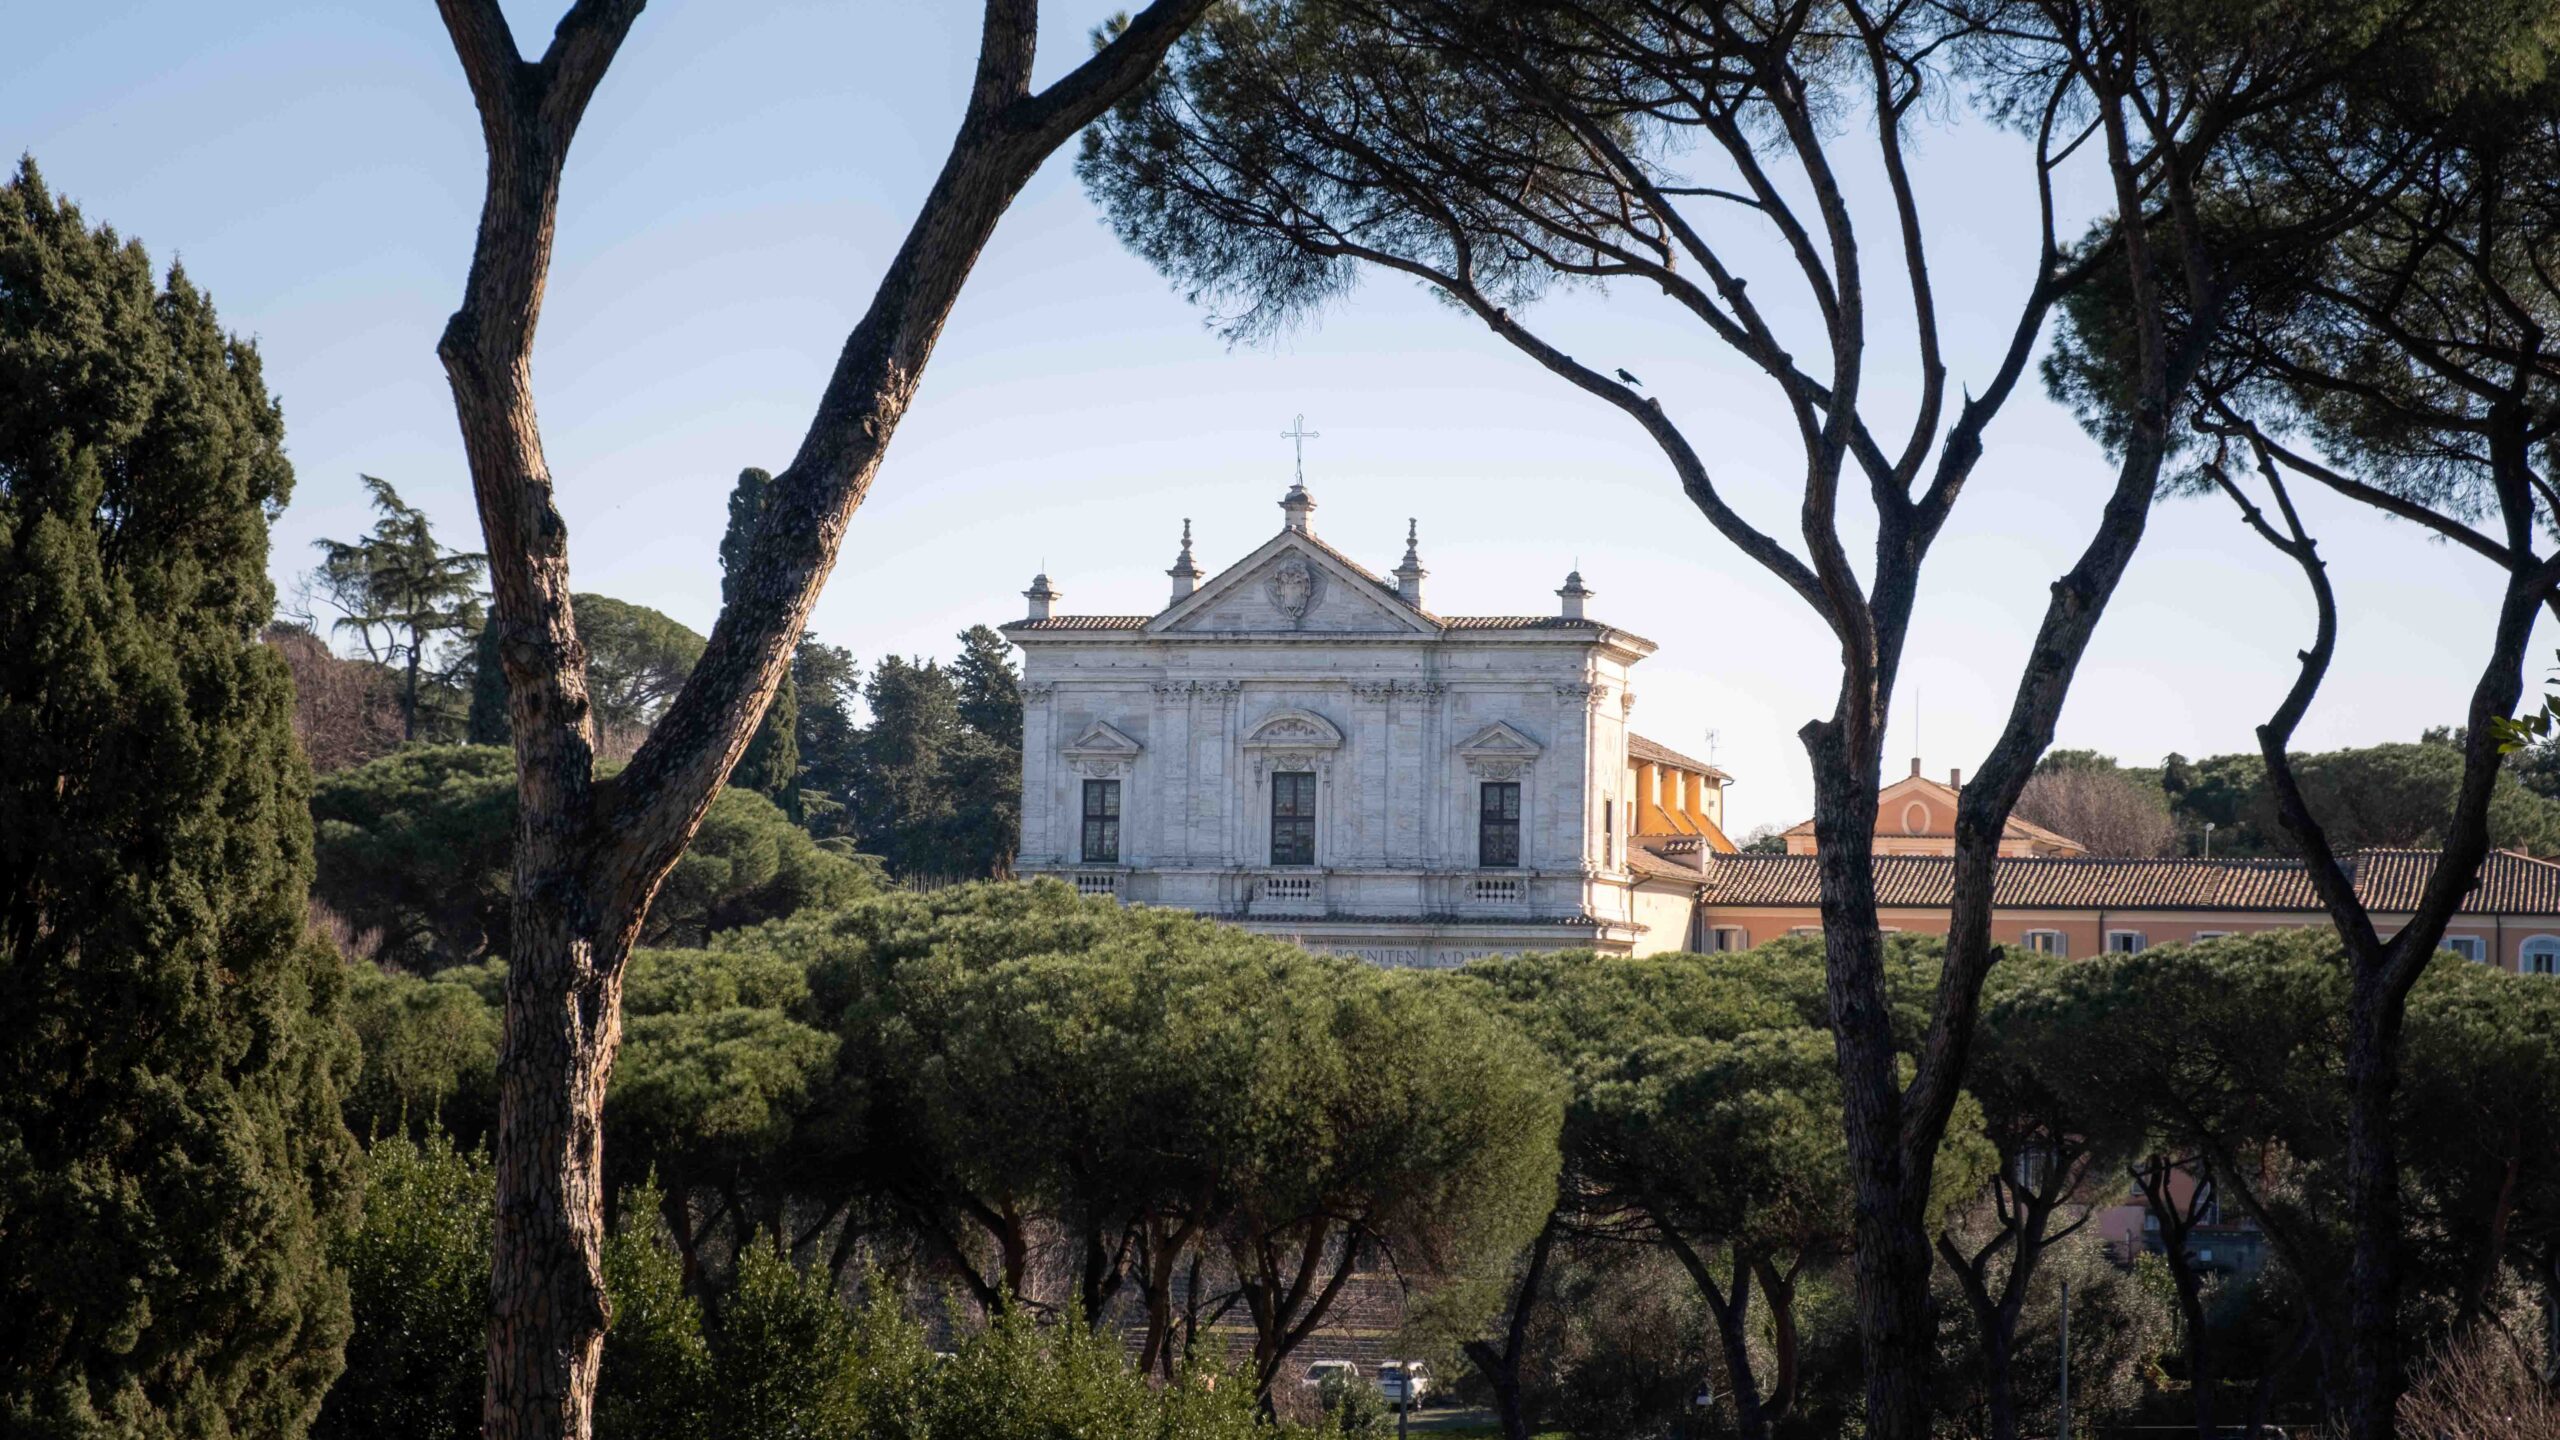 Villa Borghese unique hidden gems in Rome